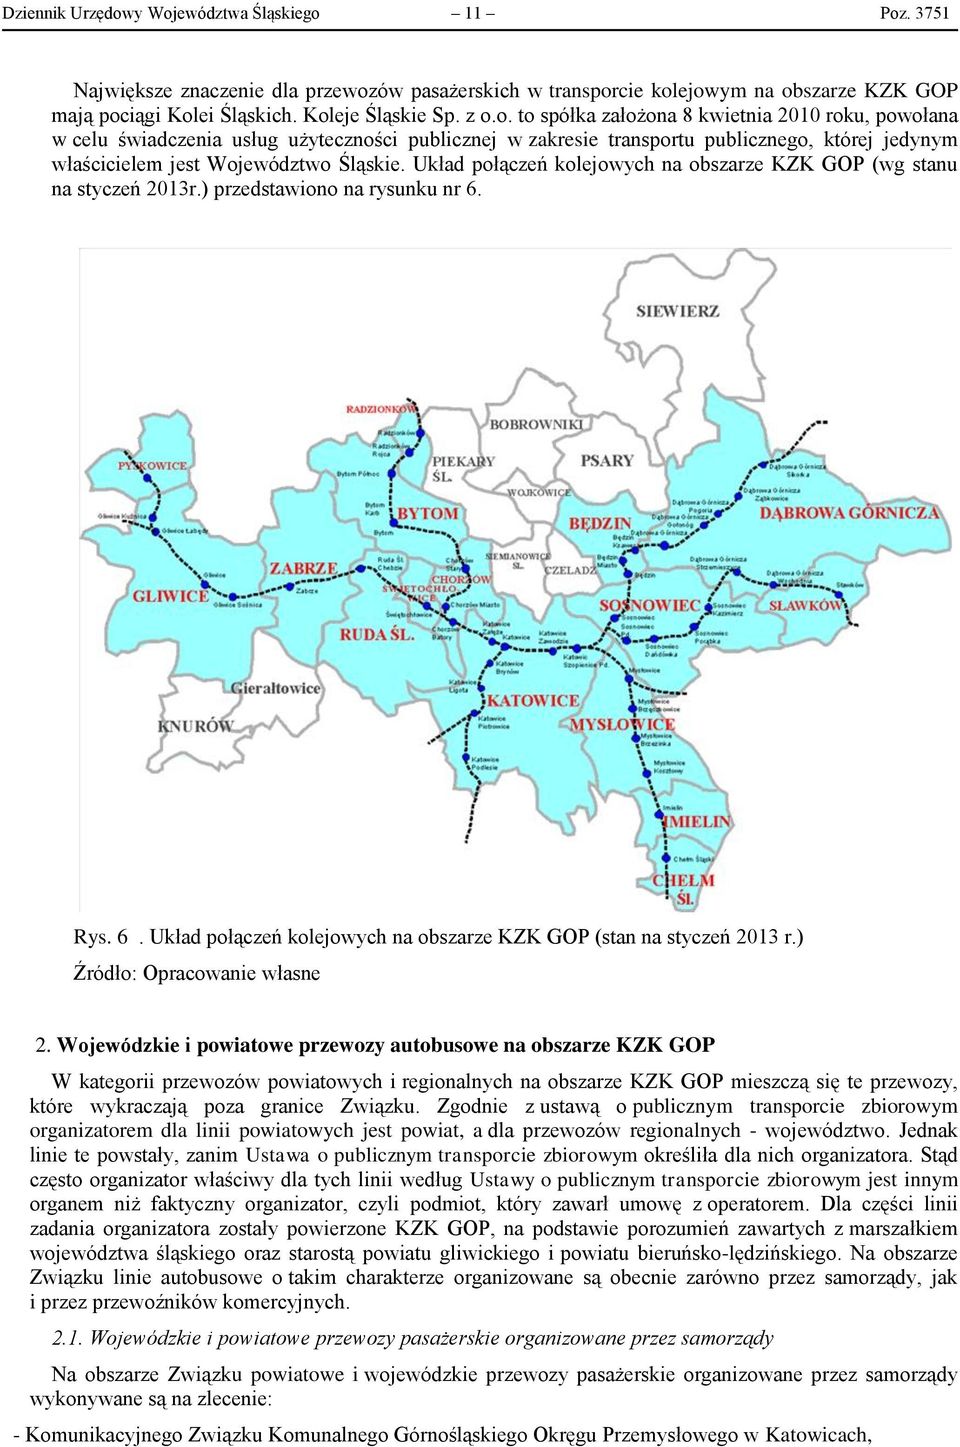 Układ połączeń kolejowych na obszarze KZK GOP (wg stanu na styczeń 2013r.) przedstawiono na rysunku nr 6. Rys. 6. Układ połączeń kolejowych na obszarze KZK GOP (stan na styczeń 2013 r.